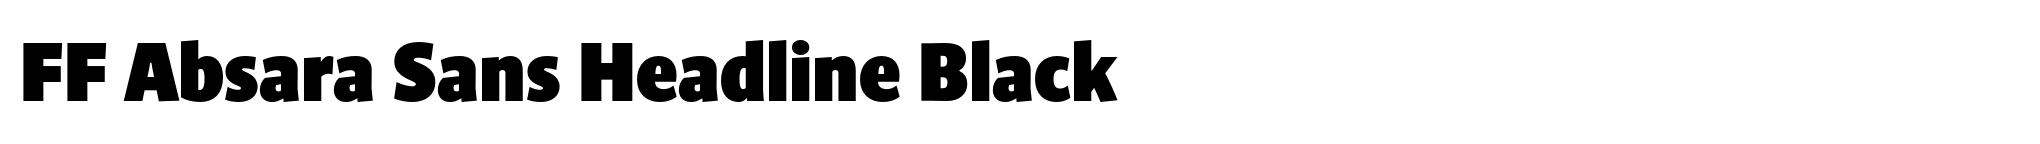 FF Absara Sans Headline Black image